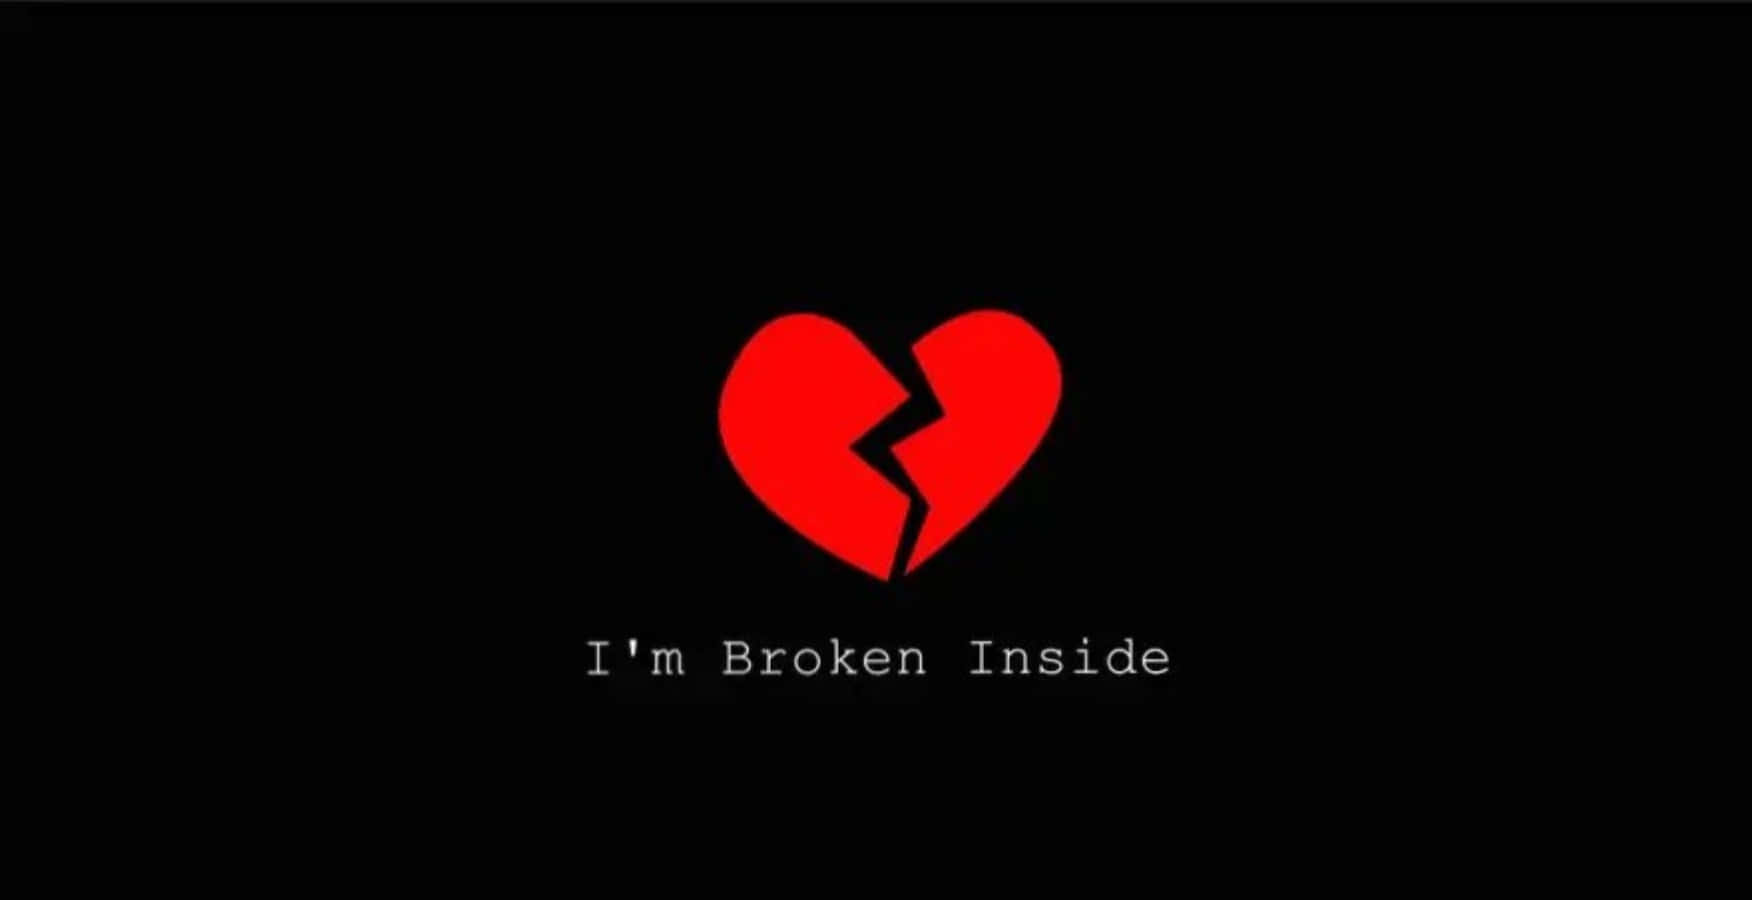 I m broken wallpaper by badshahslaamat  Download on ZEDGE  b892